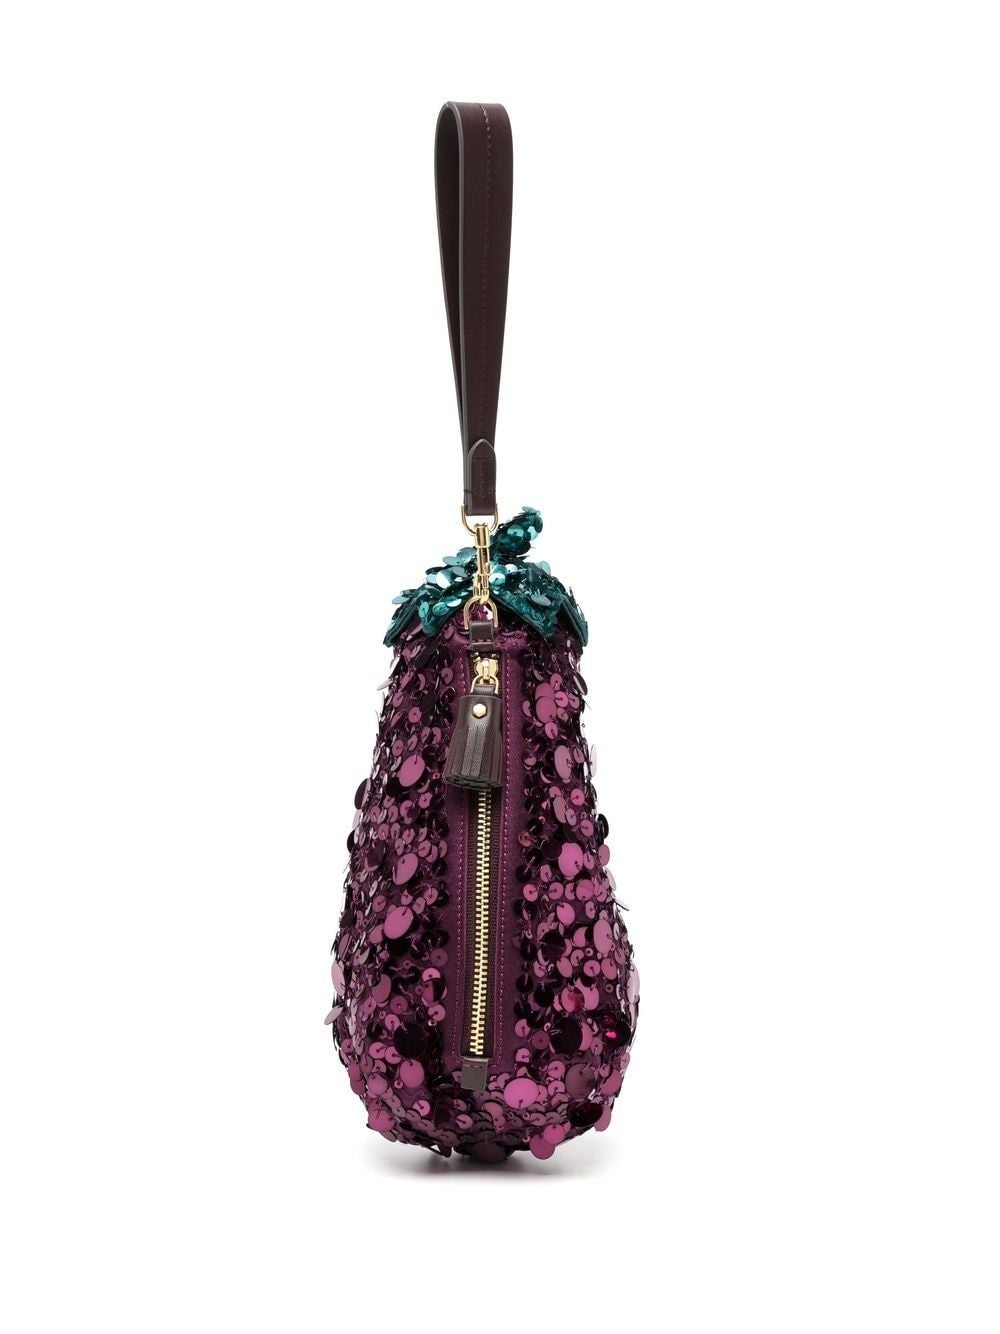 Armadillo Purse | Fancy purses, Funny purses, Unusual handbags